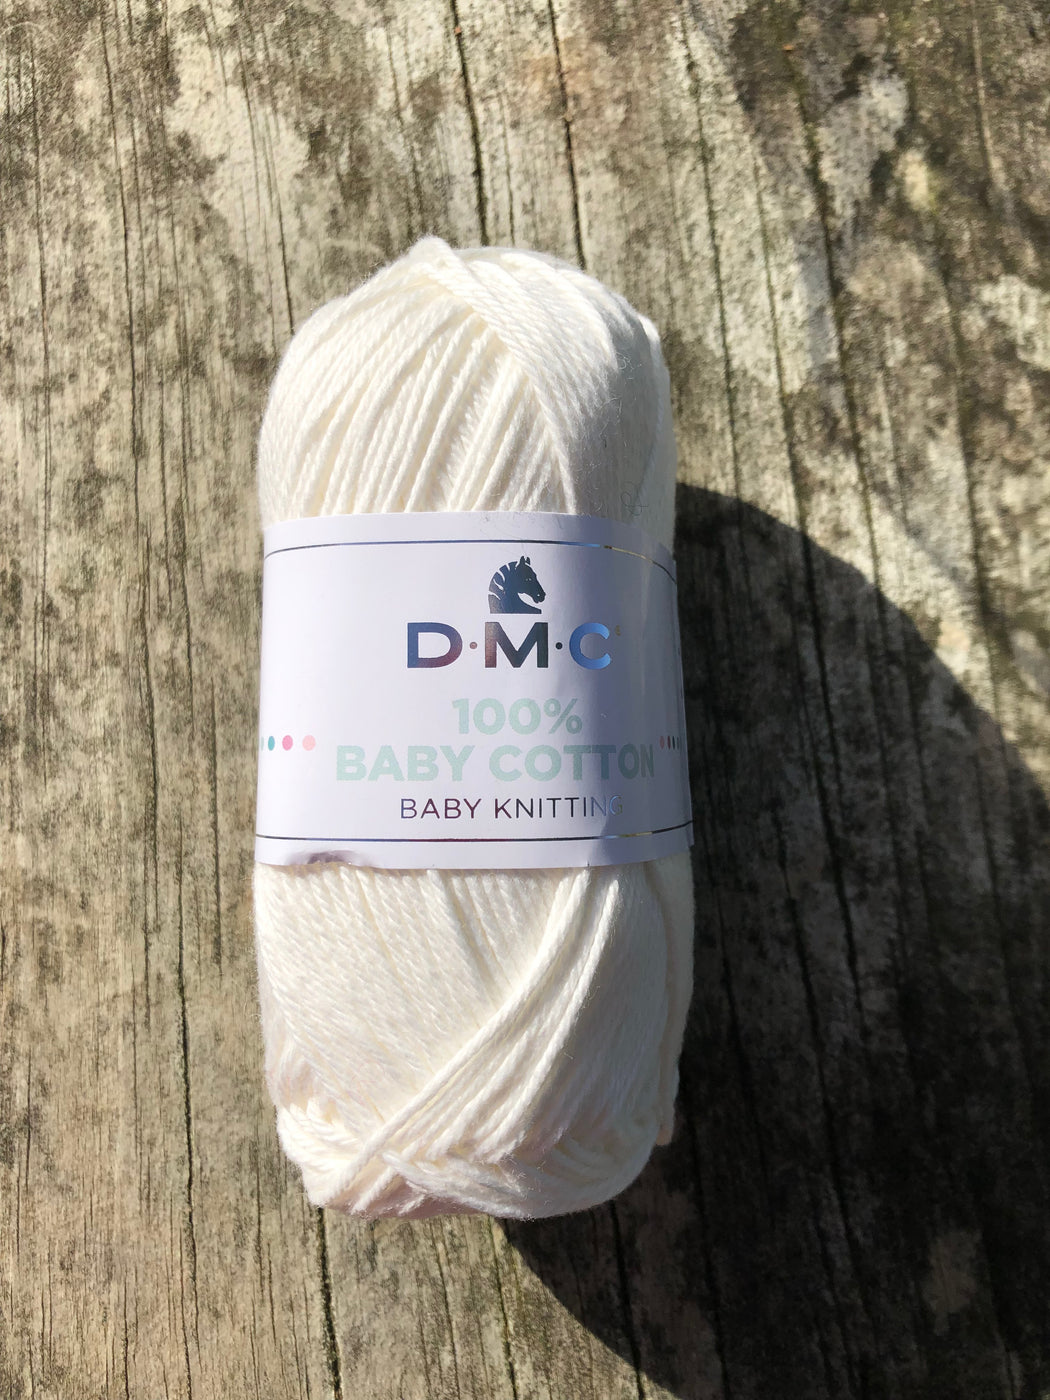 DMC Baby Cotton un